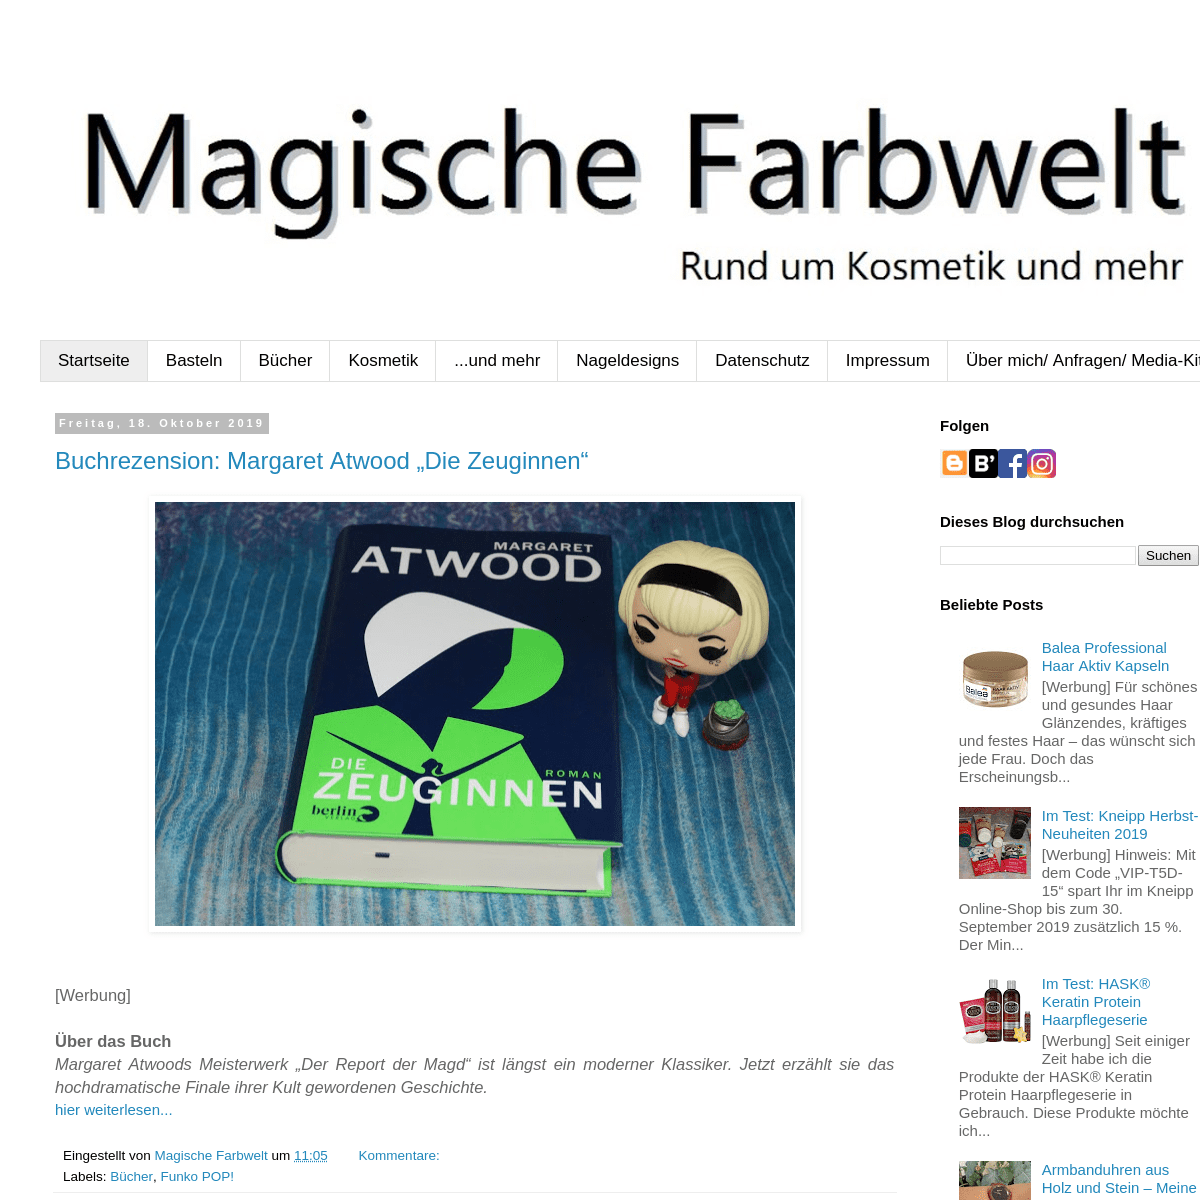 A complete backup of magischefarbwelt.blogspot.com